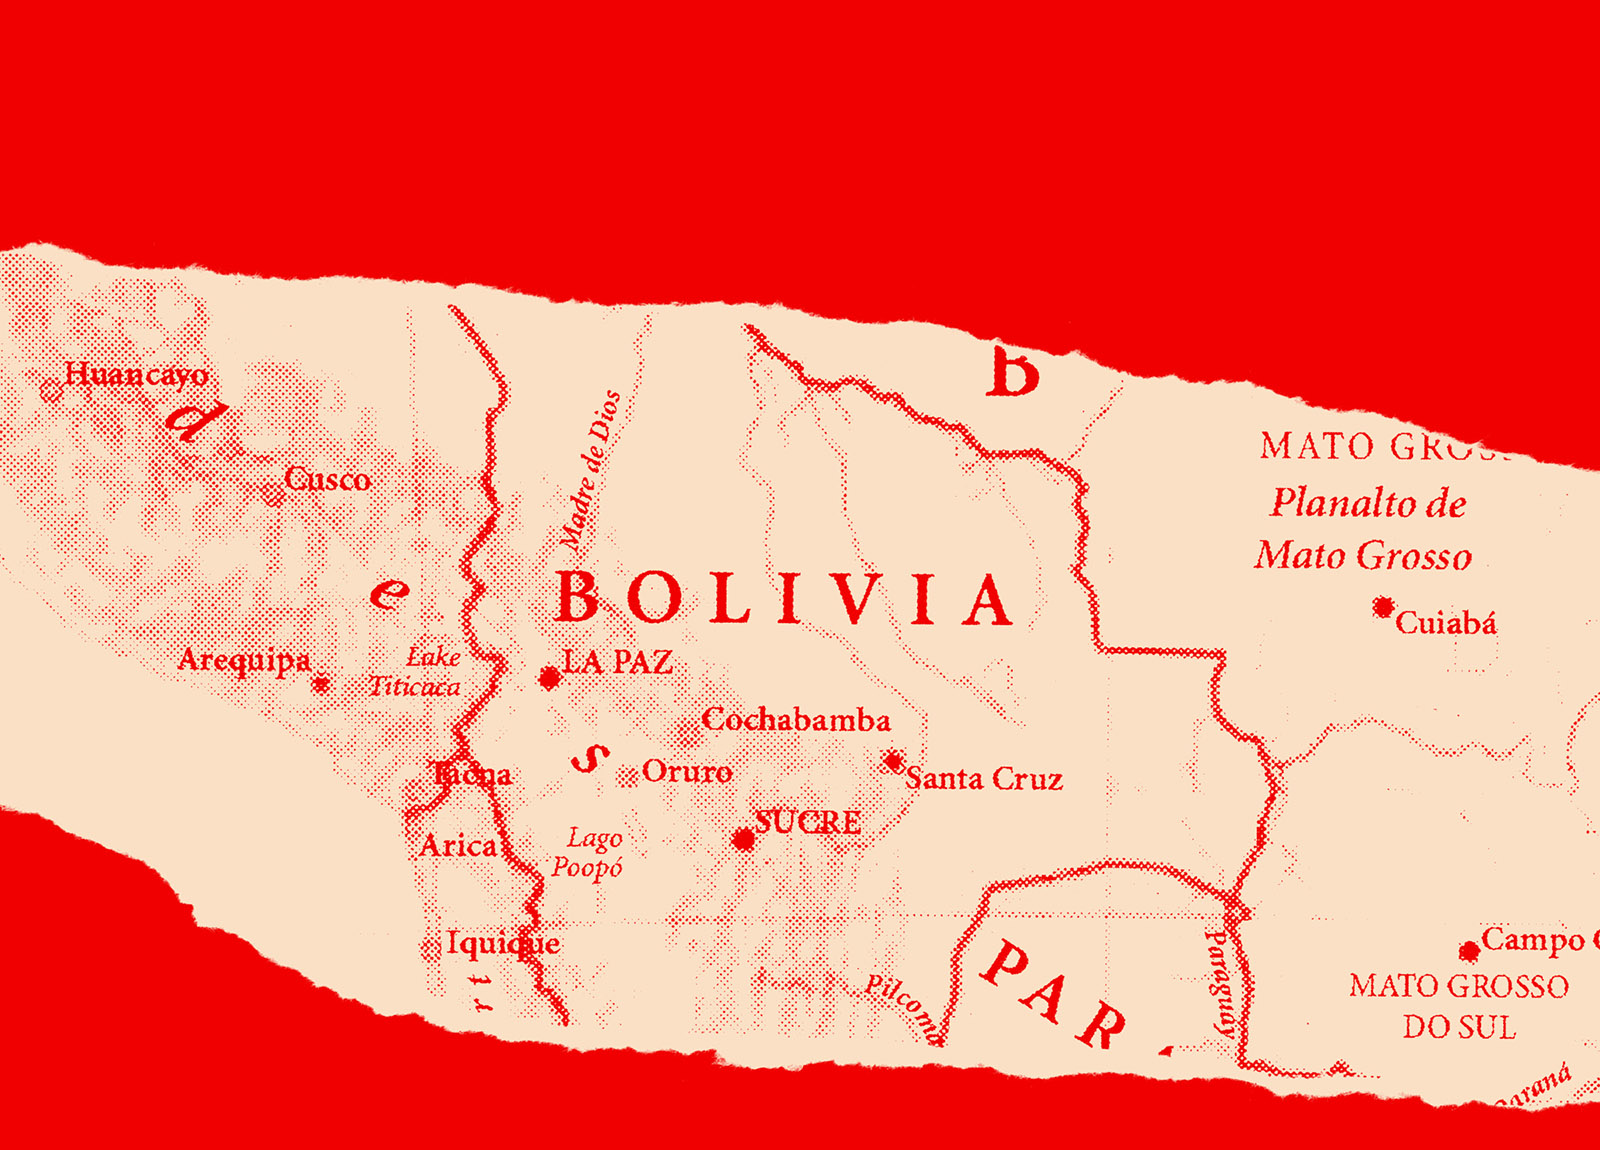 https://newyorkwarcrimes.com/media/pages/bolivia-2019/e0fce88097-1709843804/history-bolivia-header.jpg